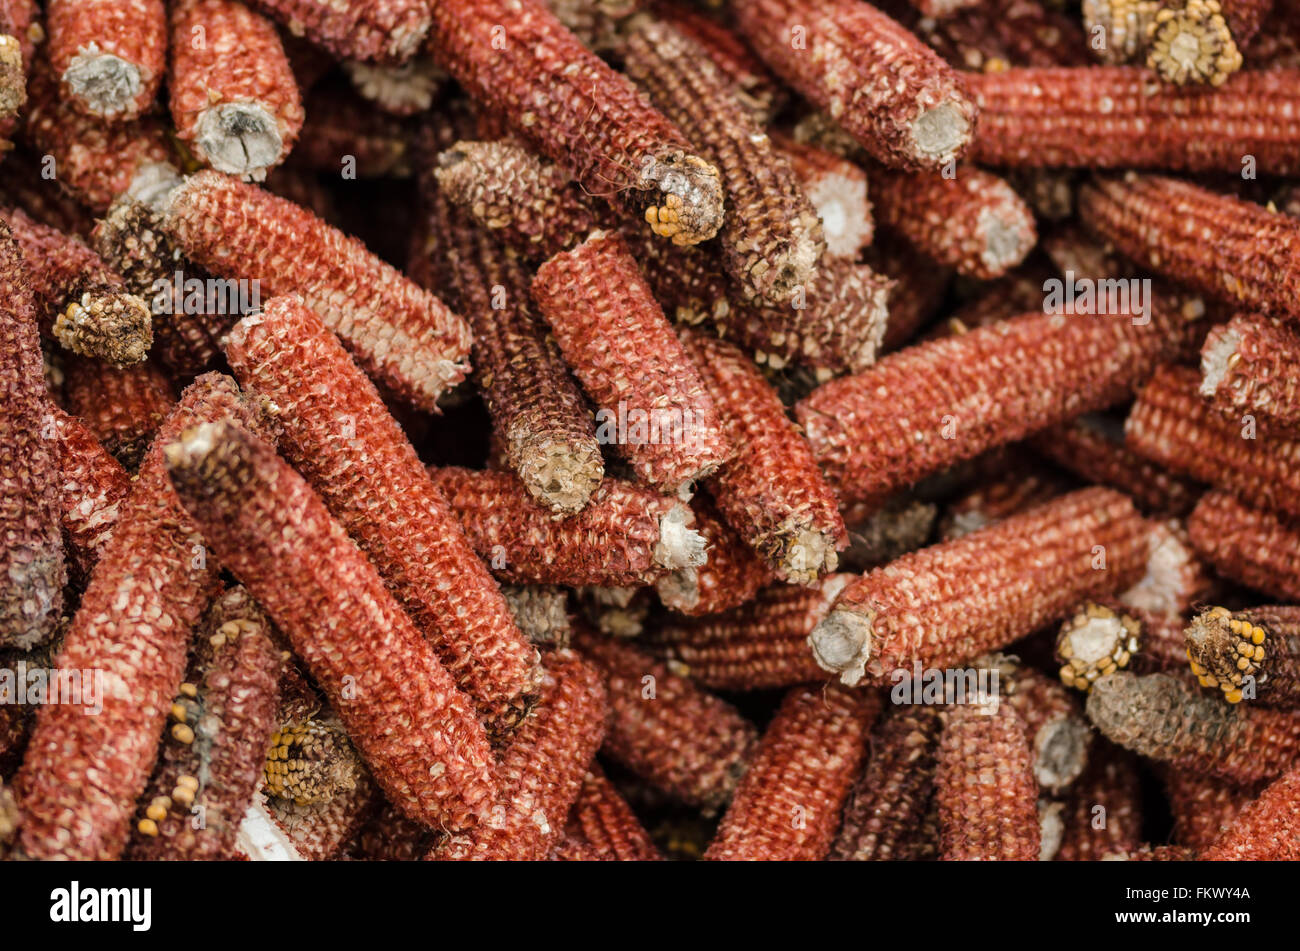 Les épis de maïs séchés après avoir bombardé les grains de maïs récoltés par machine Banque D'Images